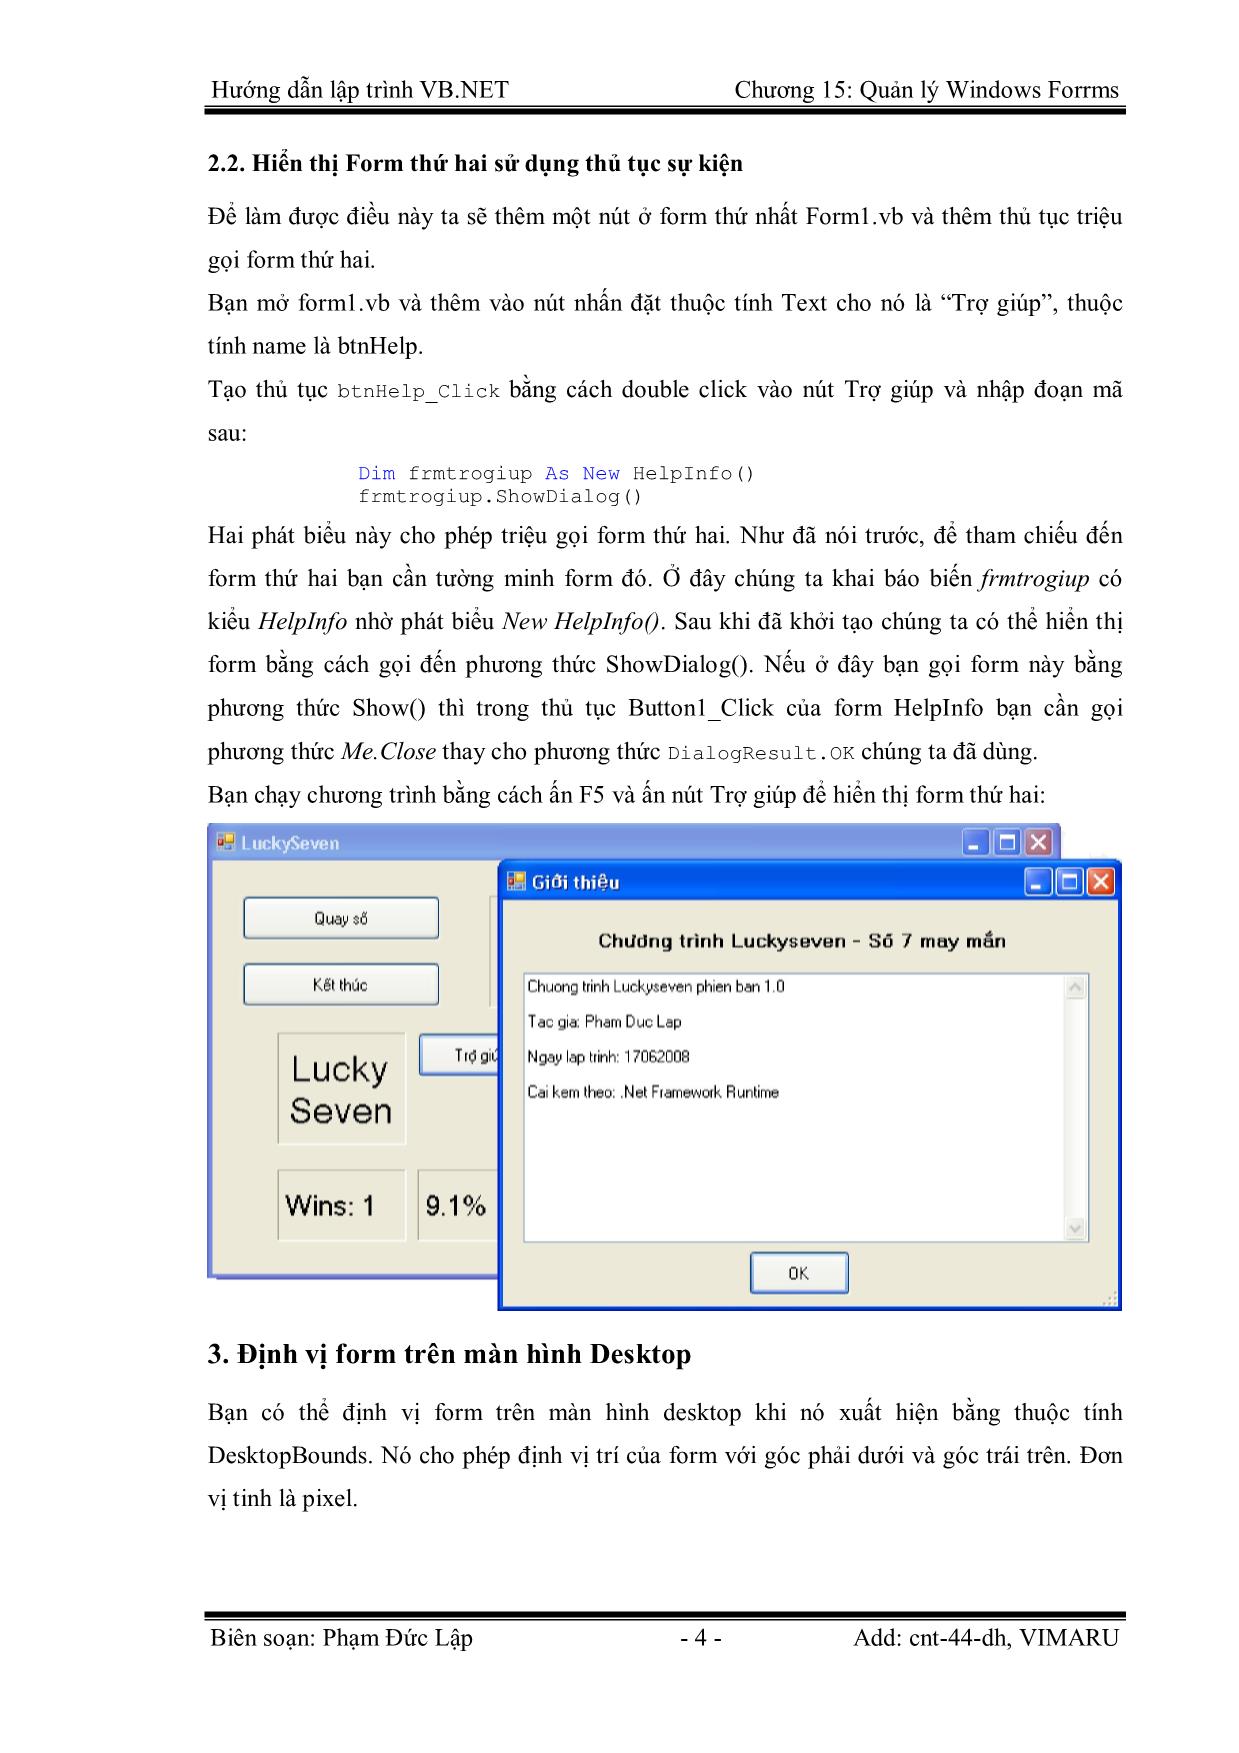 Giáo trình Hướng dẫn lập trình VB.NET - Chương 15: Quản lý Windows Forms - Phạm Đức Lập trang 4